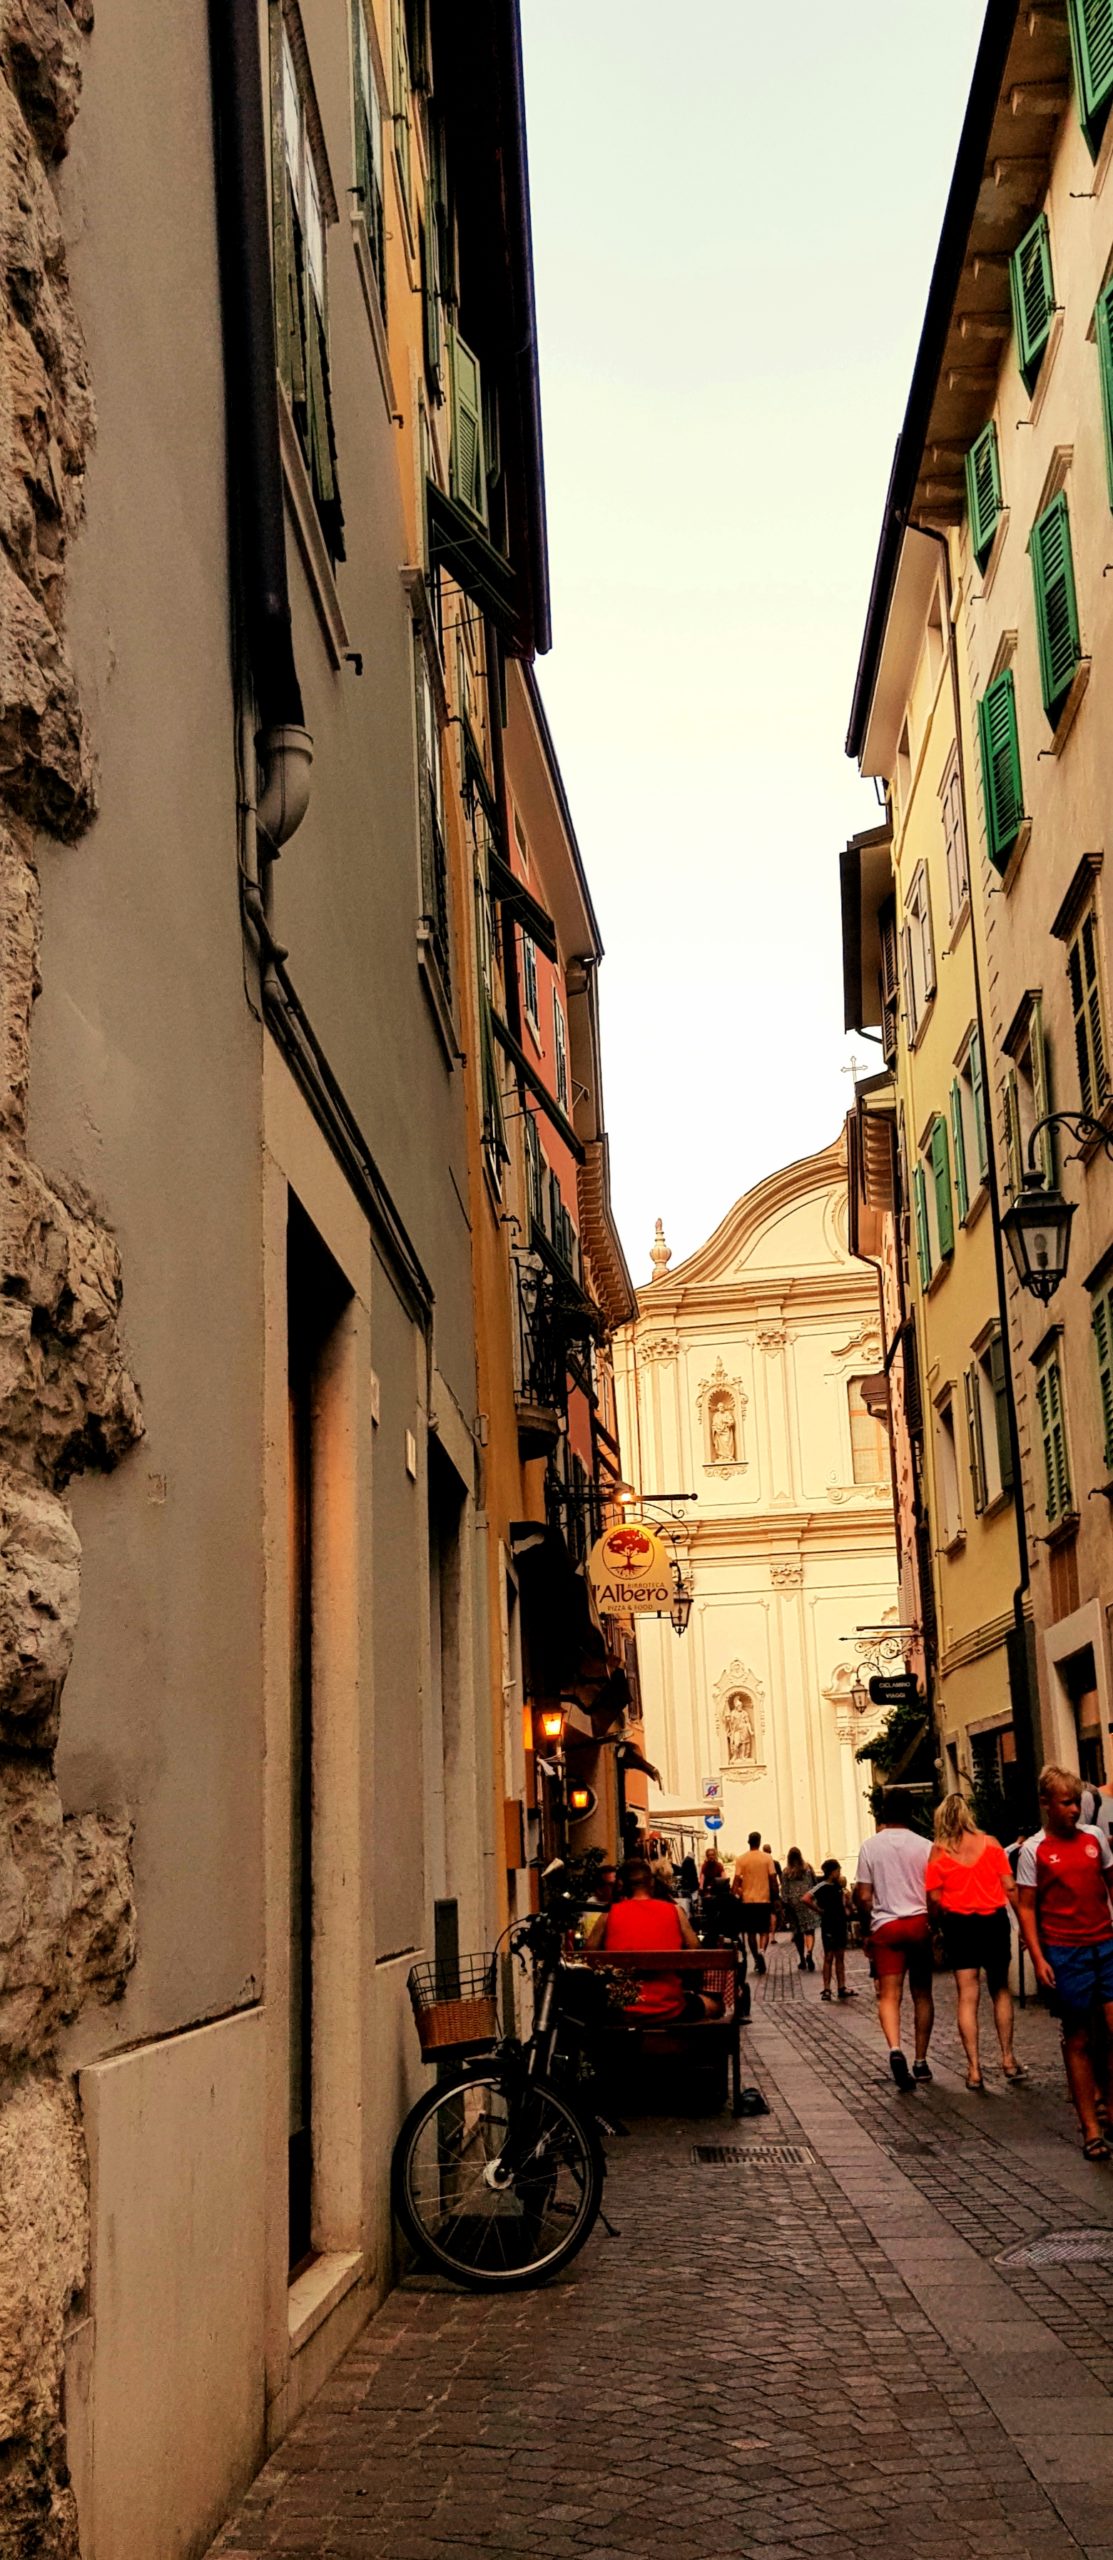 Italian Street - Isha - Age 15